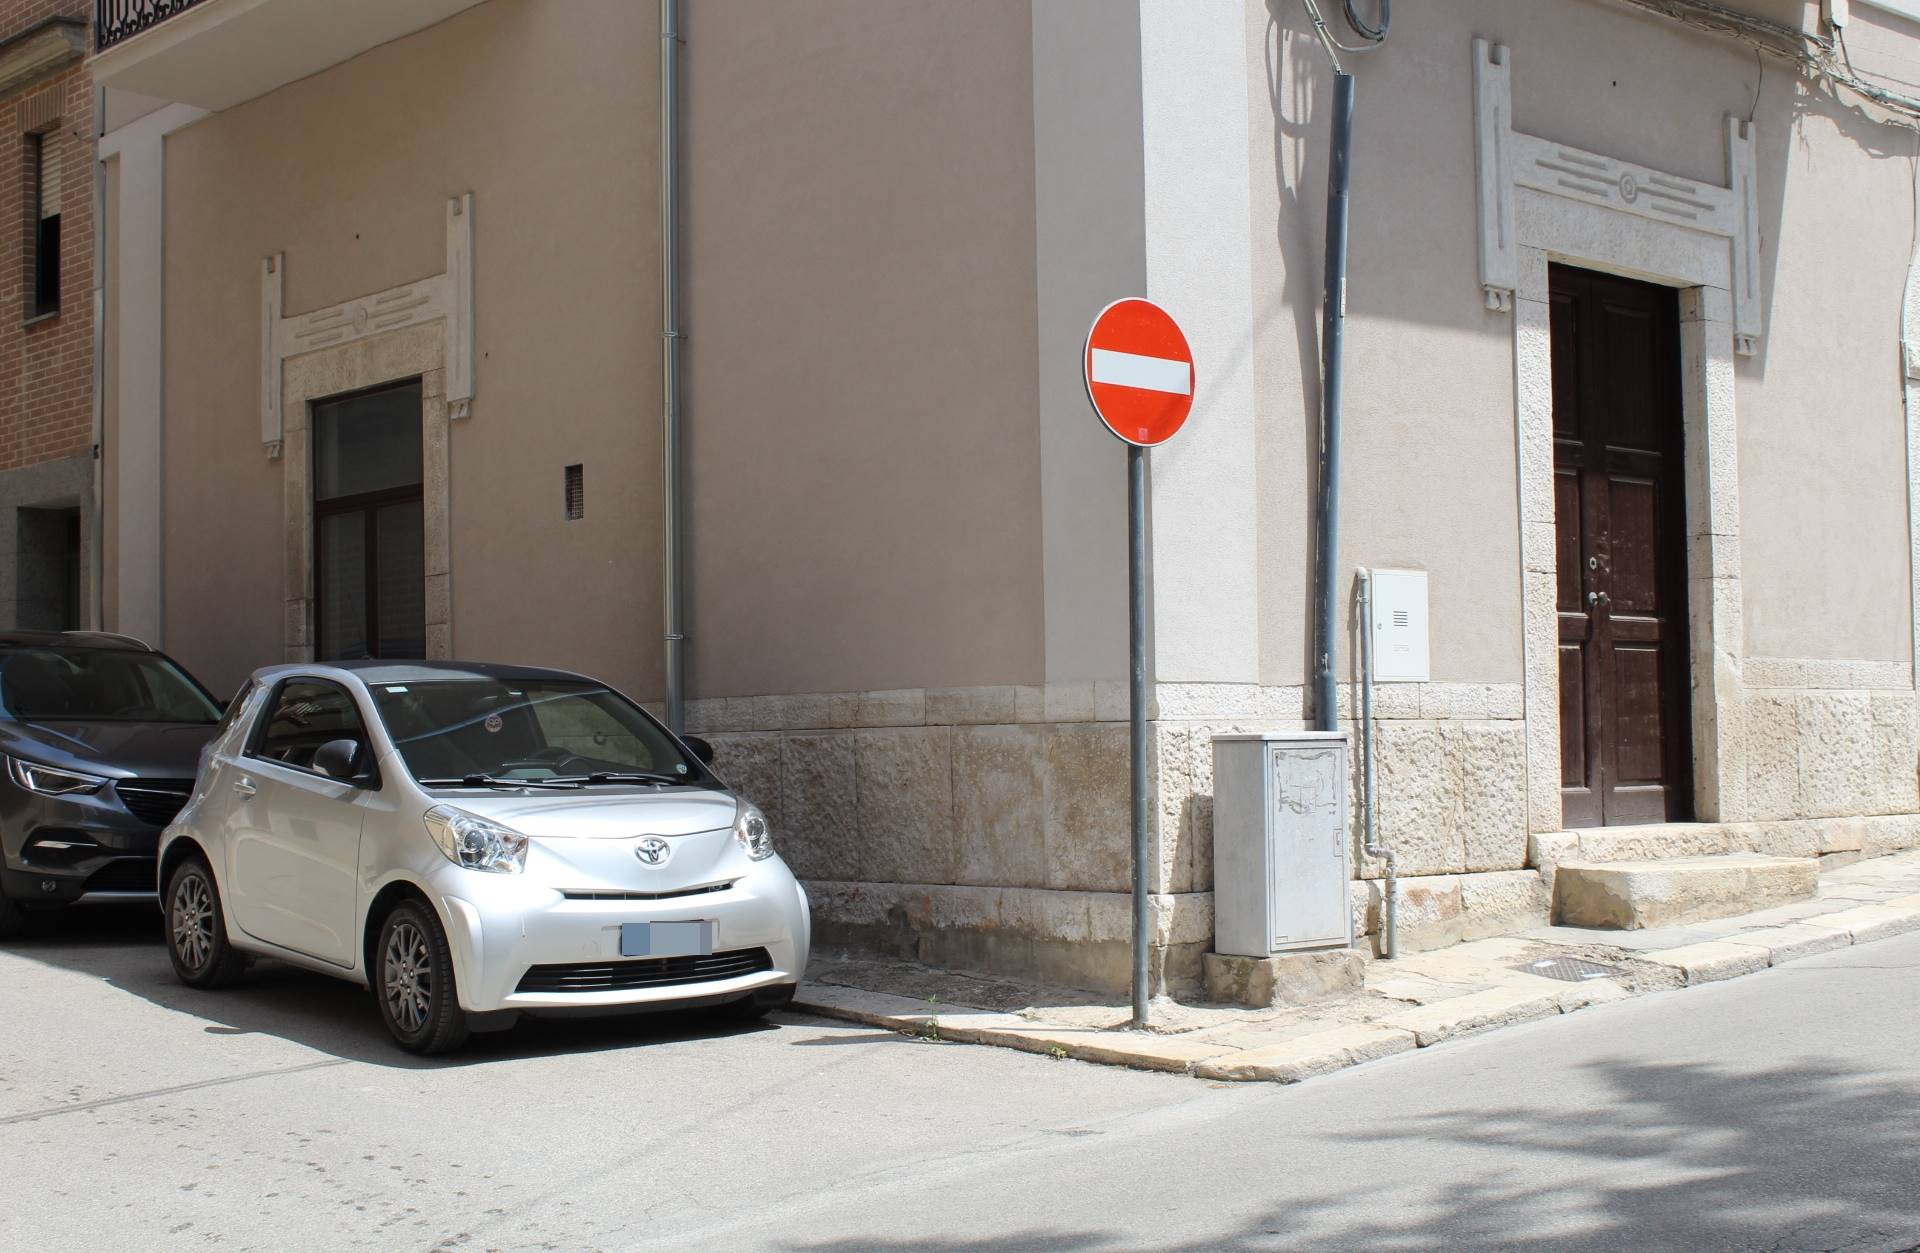 Immobile Commerciale in affitto a Canosa di Puglia, 9999 locali, prezzo € 400 | CambioCasa.it